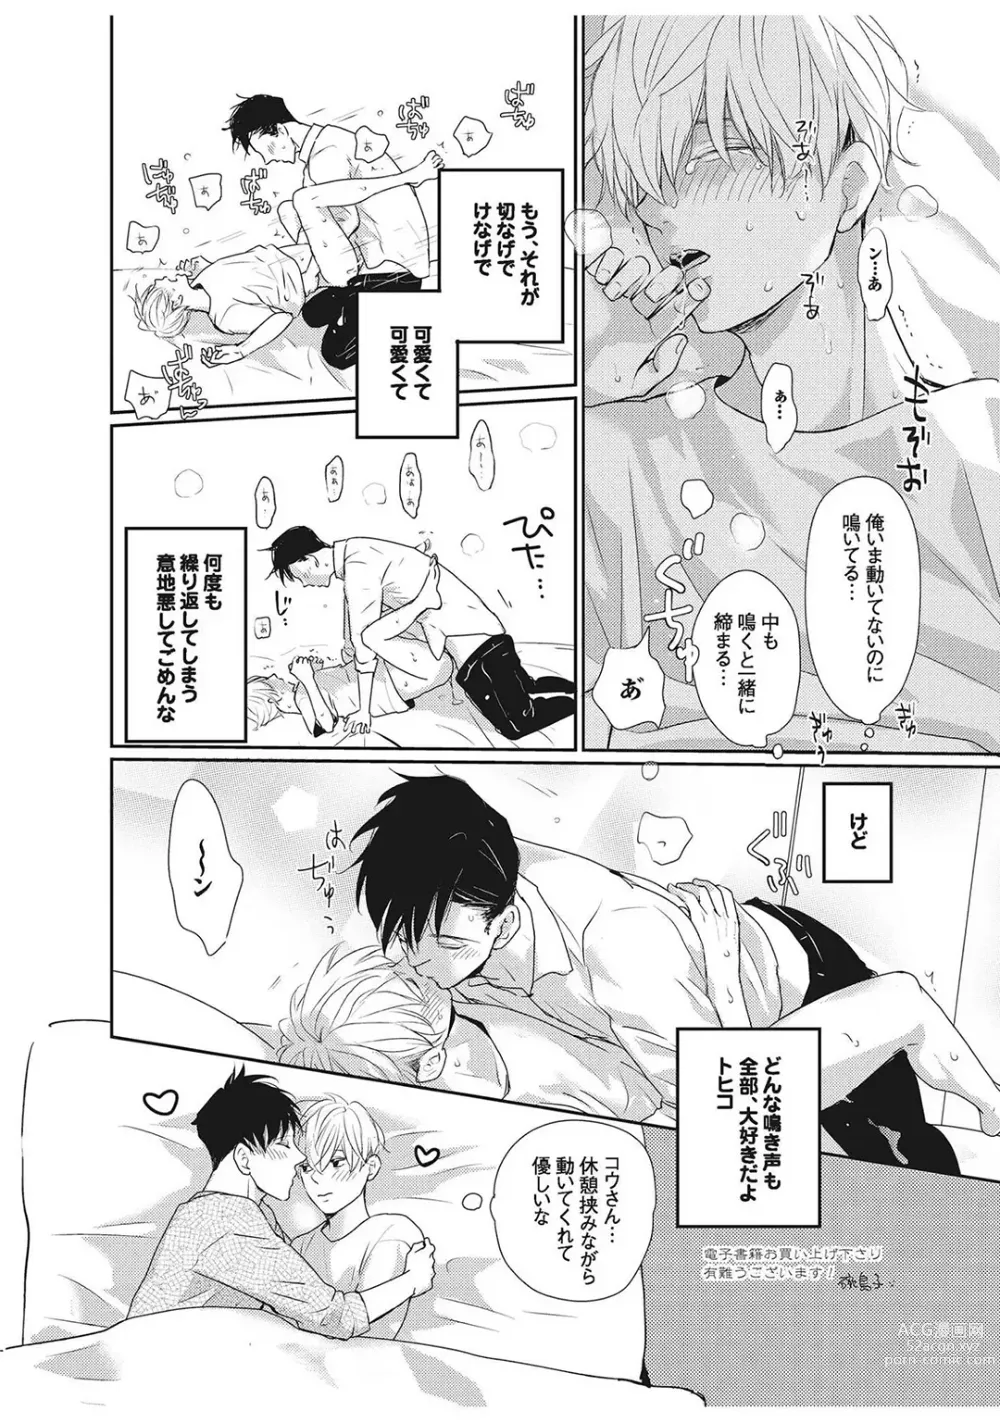 Page 222 of manga Nakenai Tohiko